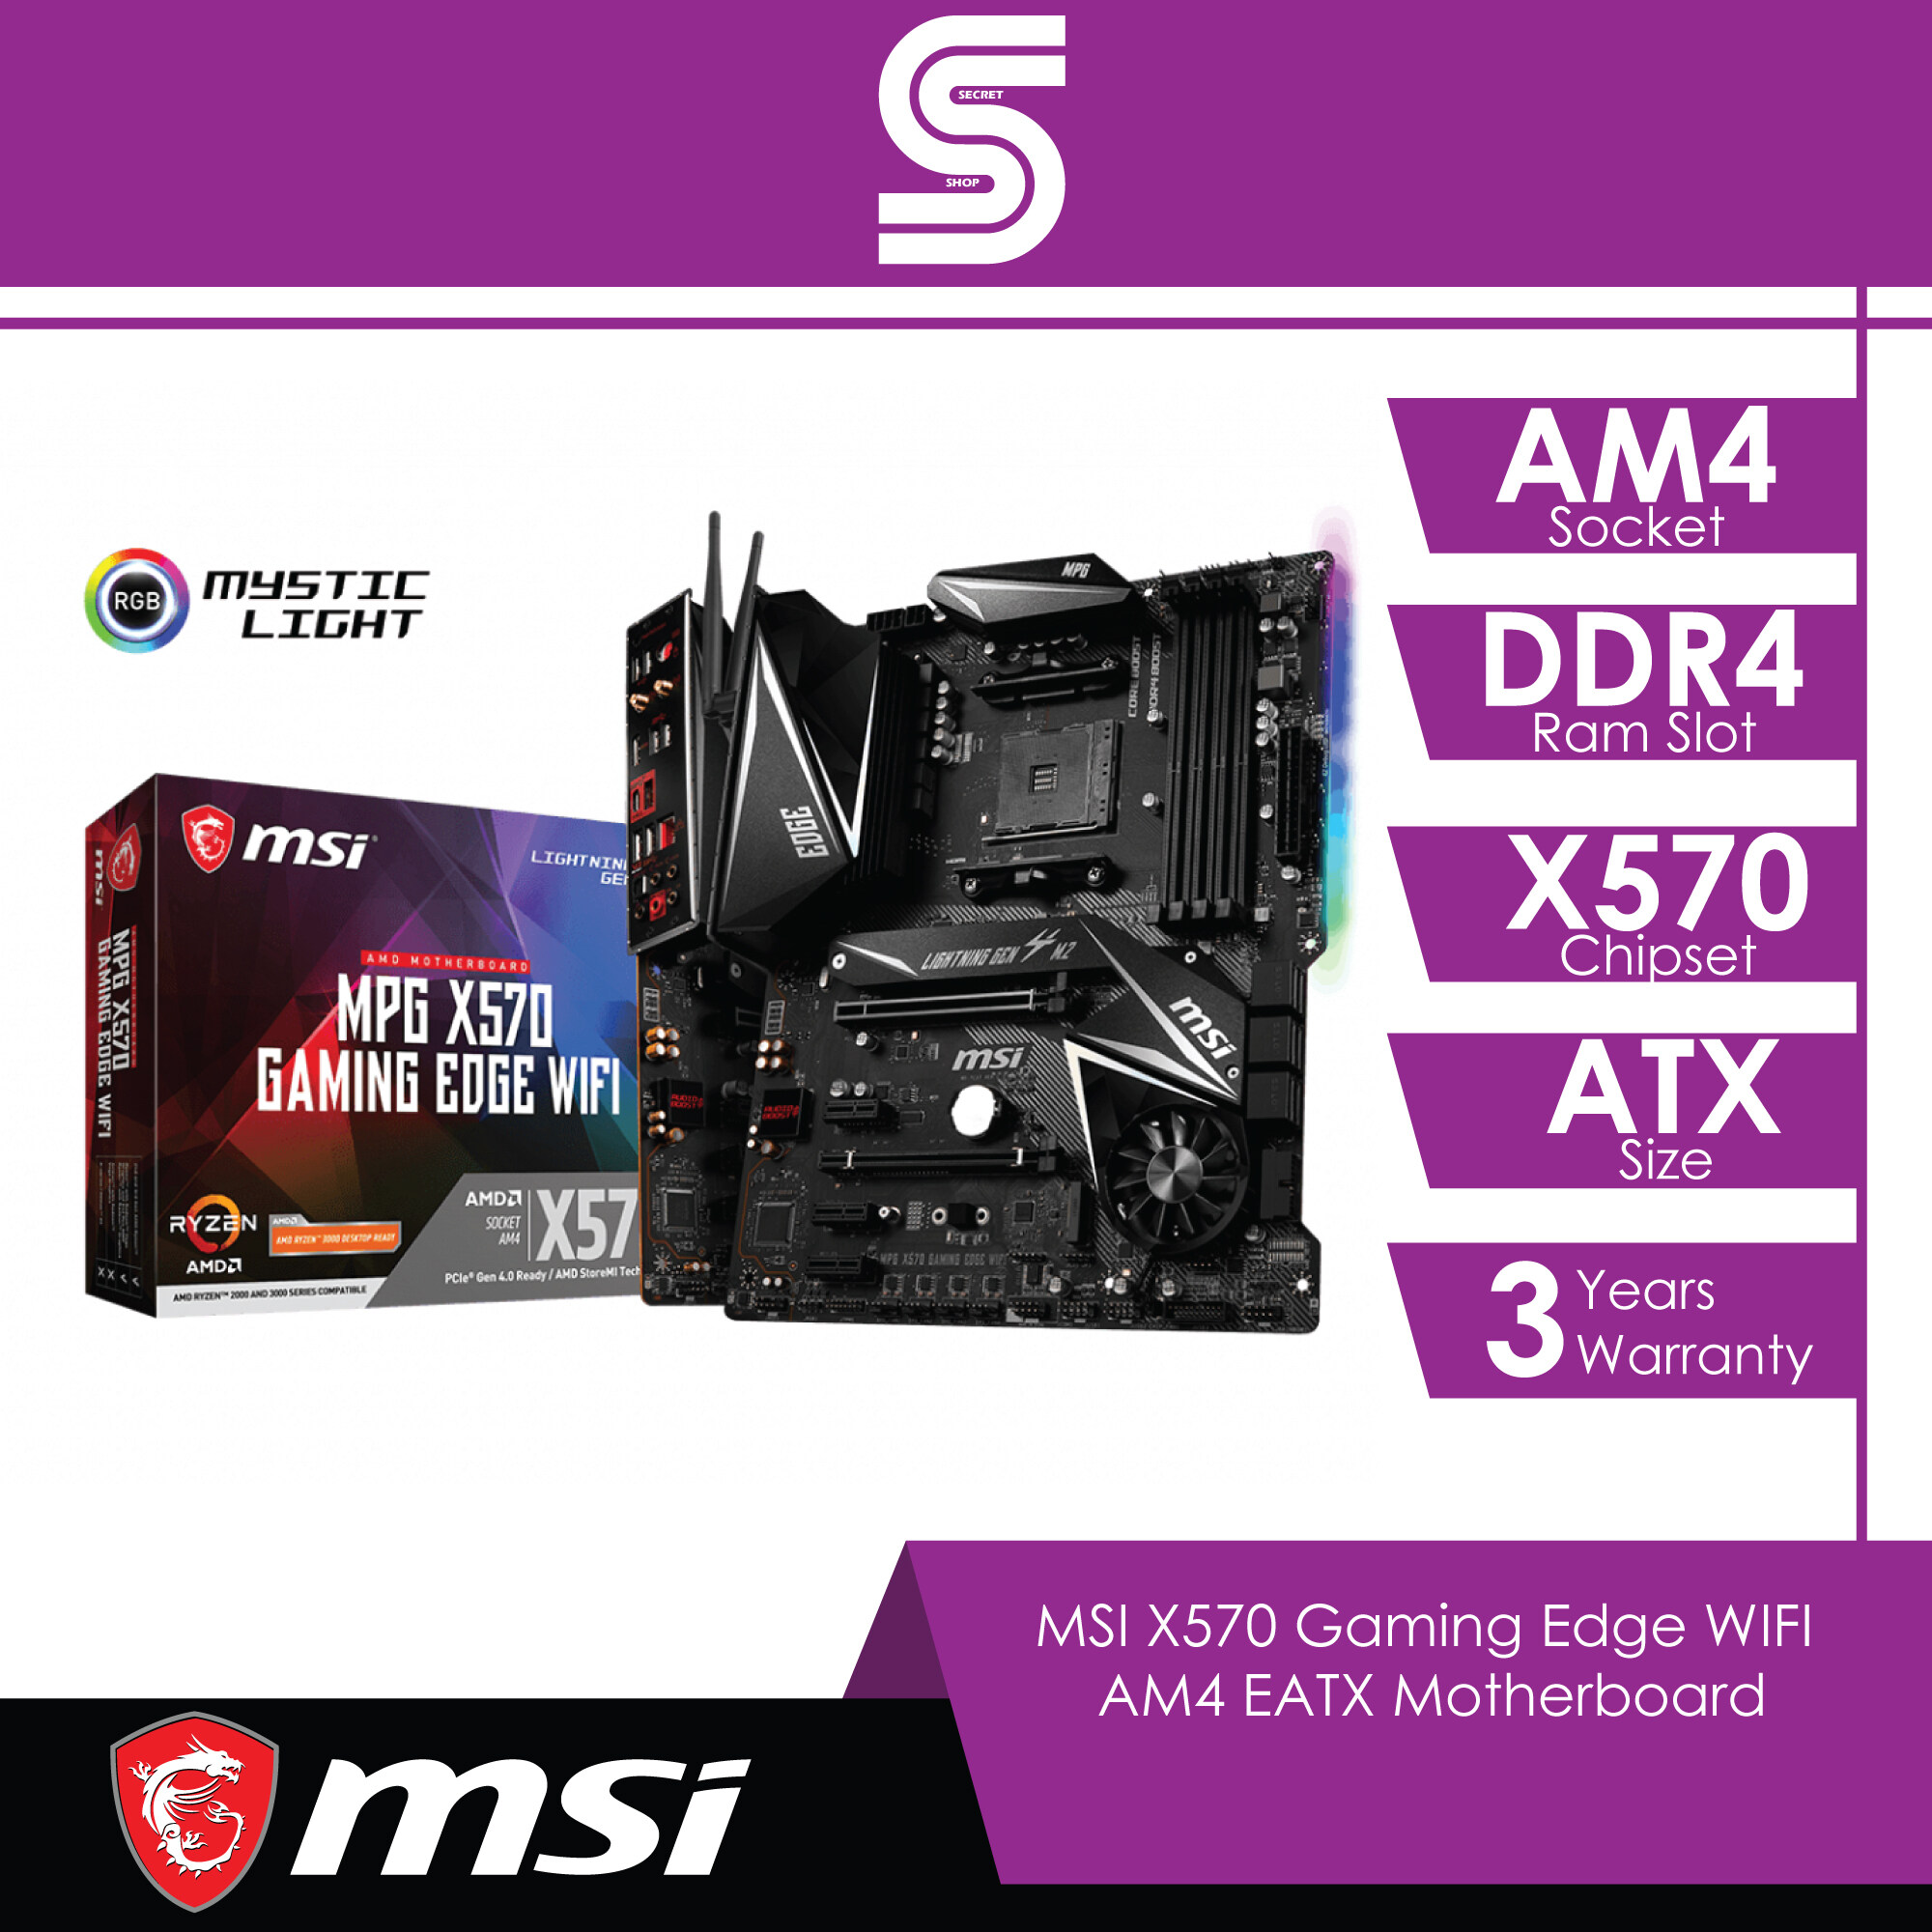 MSI X570 Gaming Edge WIFI - AM4 ATX Motherboard